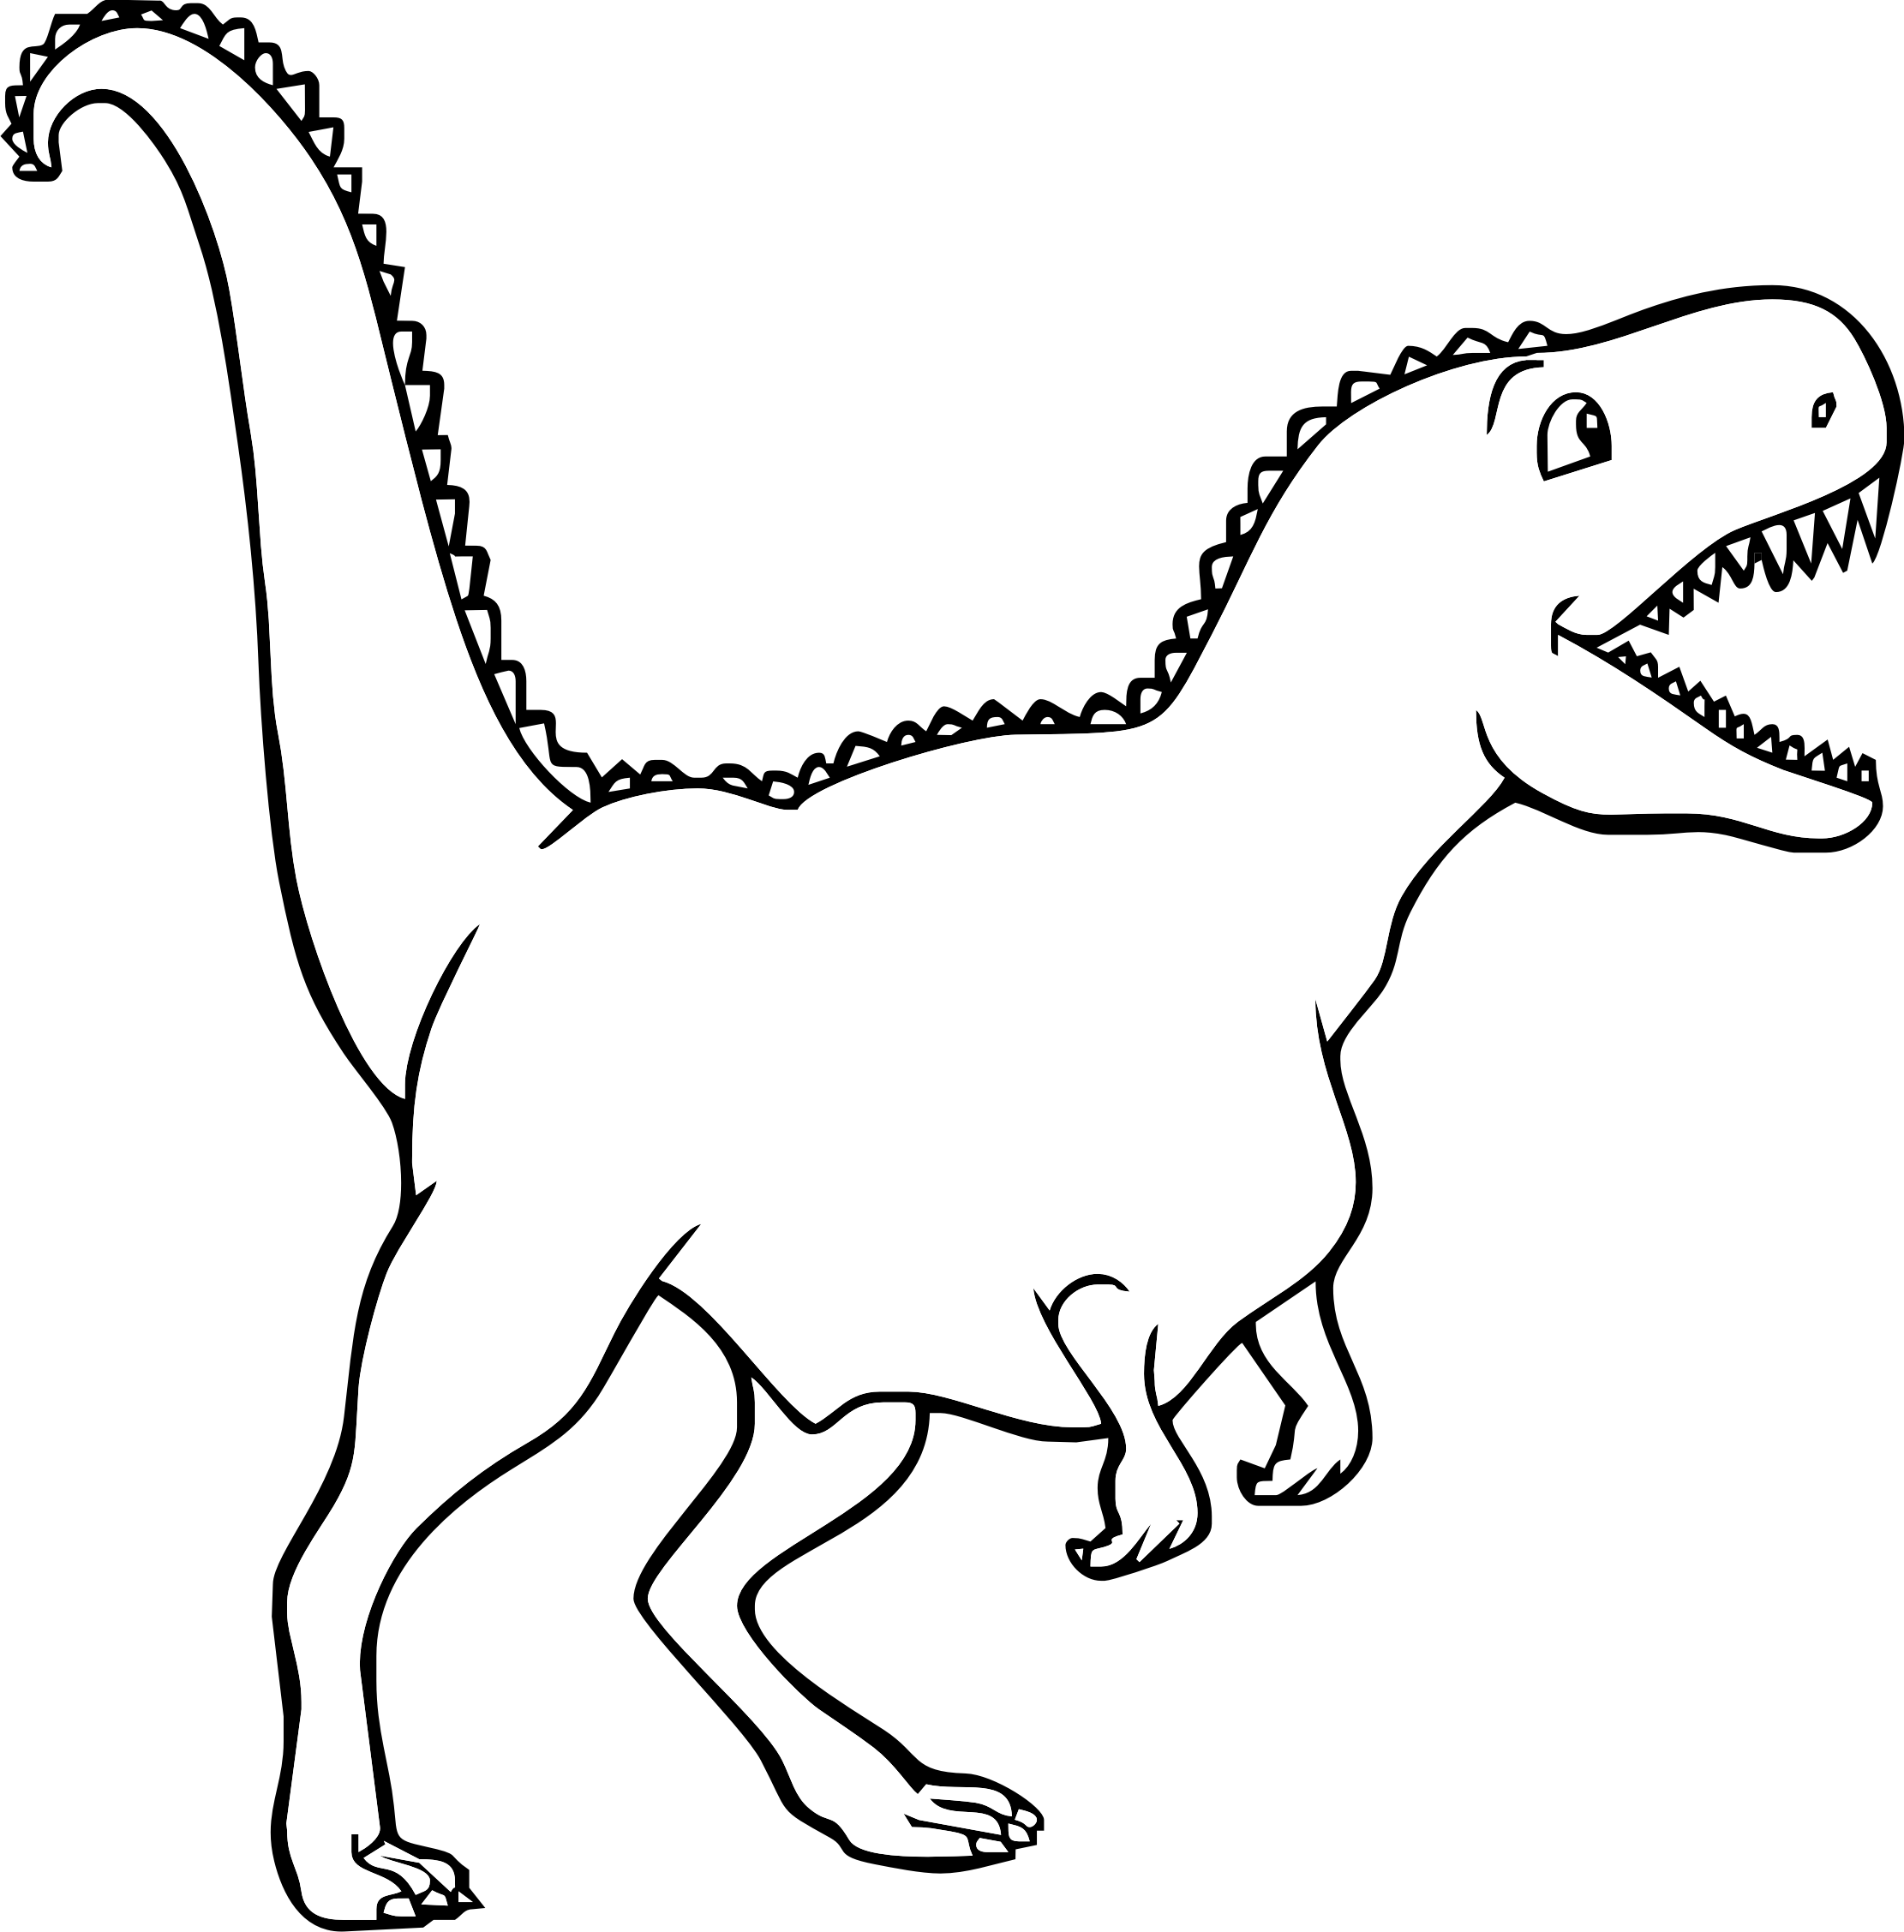 semplice_dinosauro_disegno_da_colorare